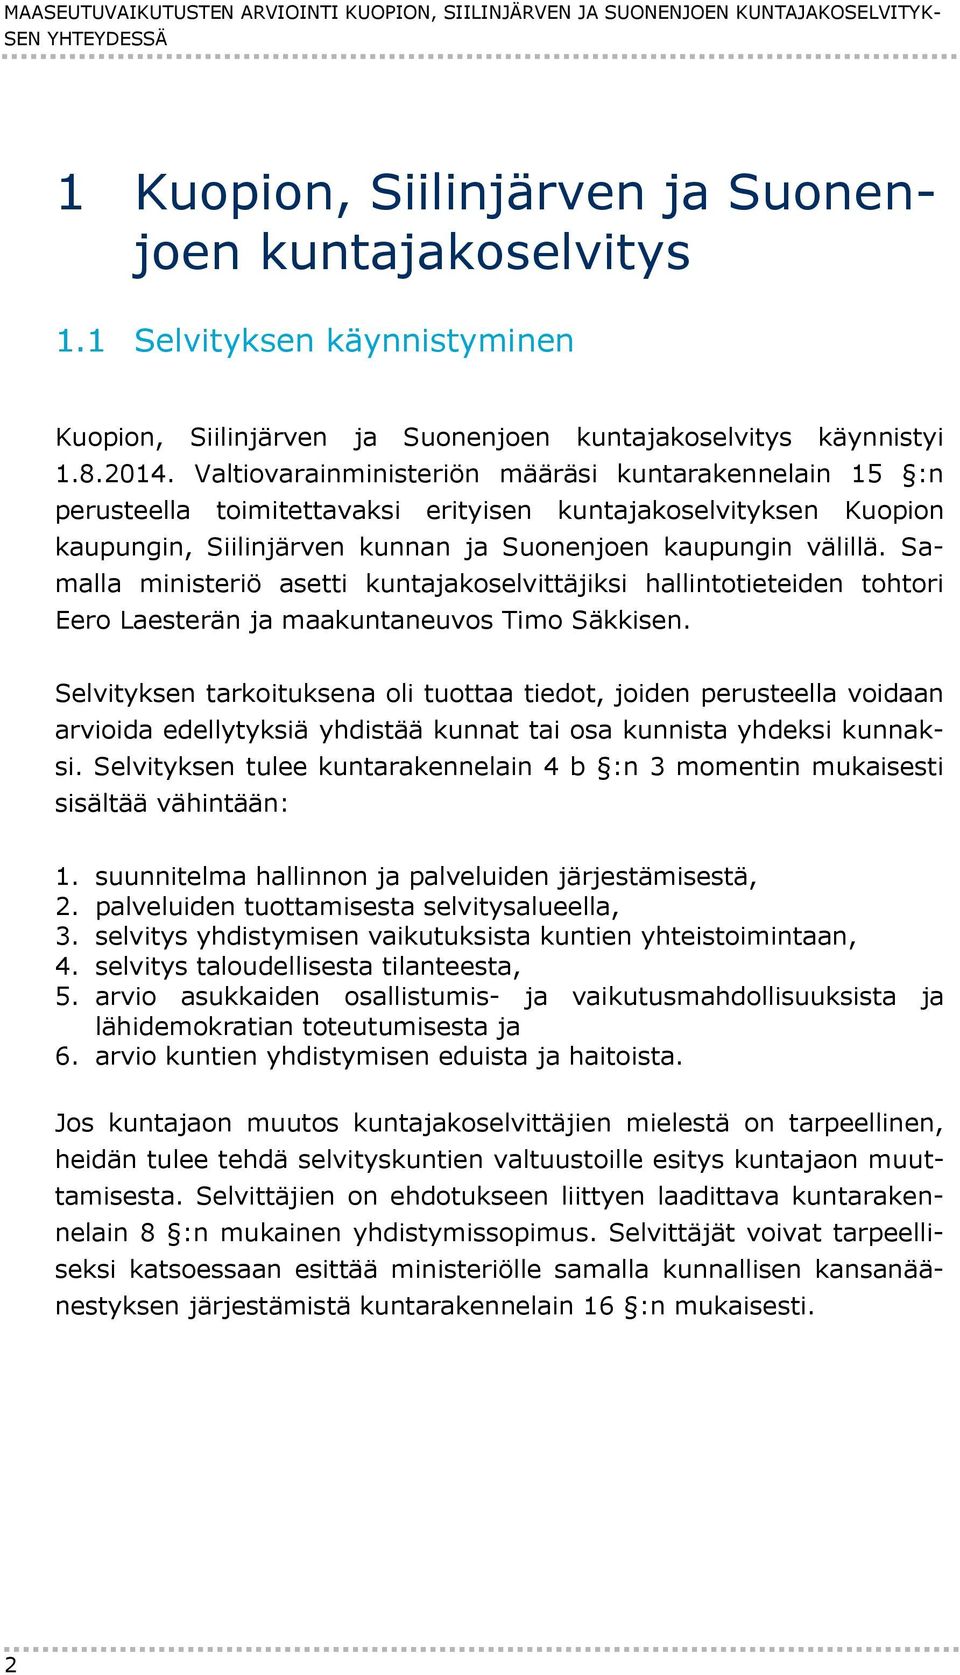 Valtiovarainministeriön määräsi kuntarakennelain 15 :n perusteella toimitettavaksi erityisen kuntajakoselvityksen Kuopion kaupungin, Siilinjärven kunnan ja Suonenjoen kaupungin välillä.